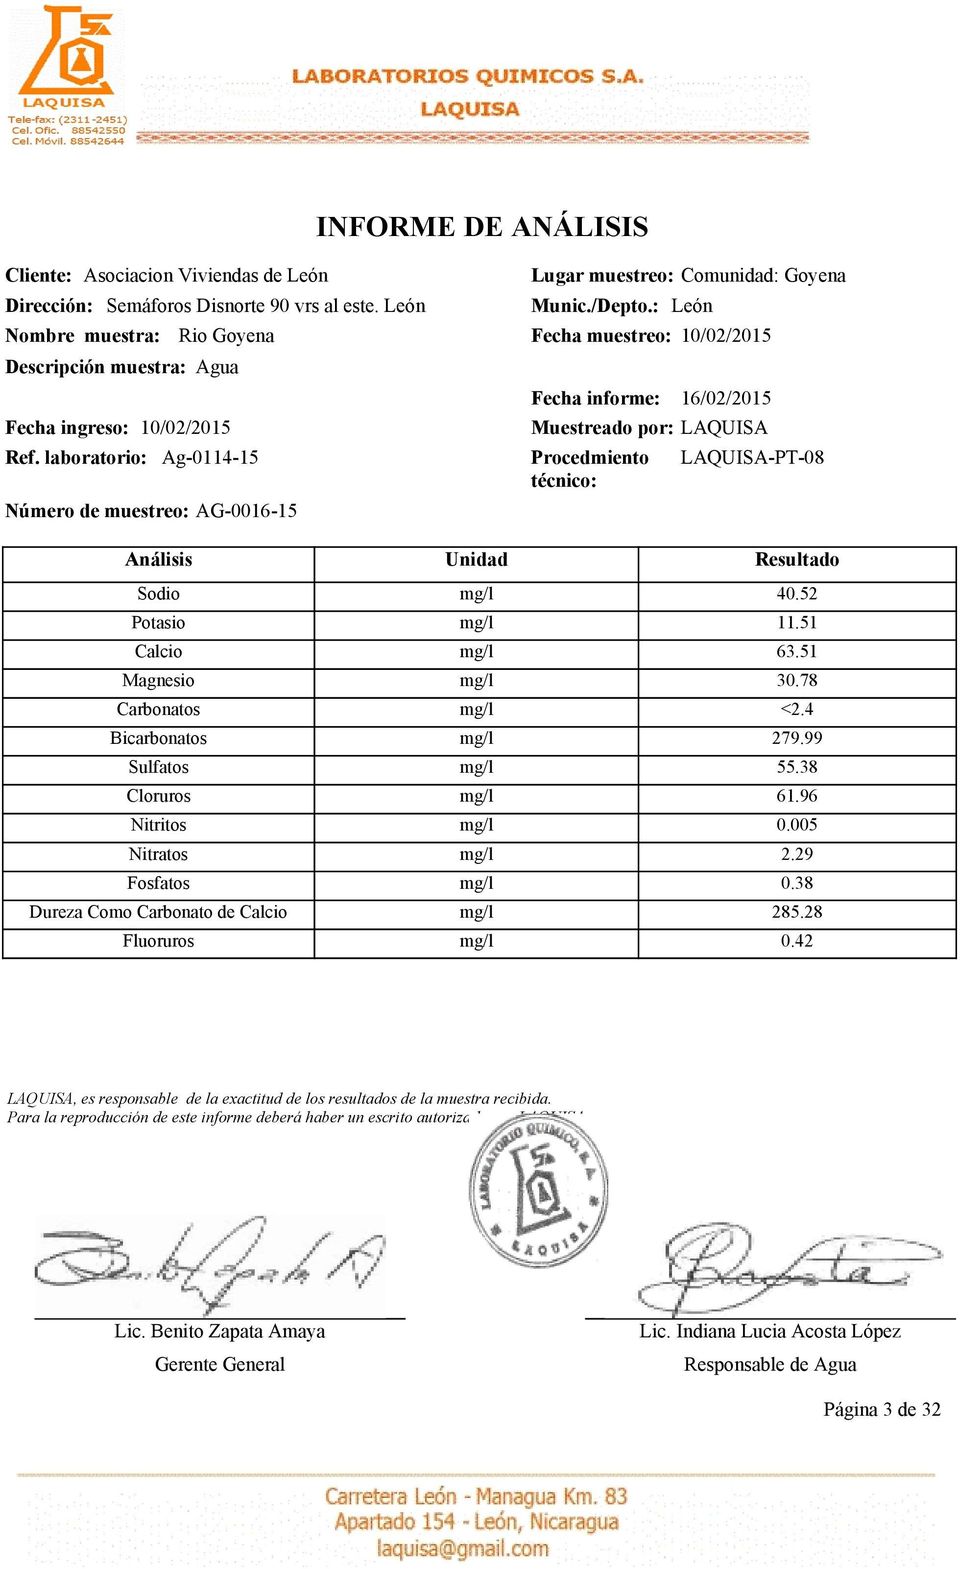 Nitratos Fosfatos Dureza Como Carbonato de Calcio Fluoruros Fecha informe: 16/02/2015 40.52 11.51 63.51 30.